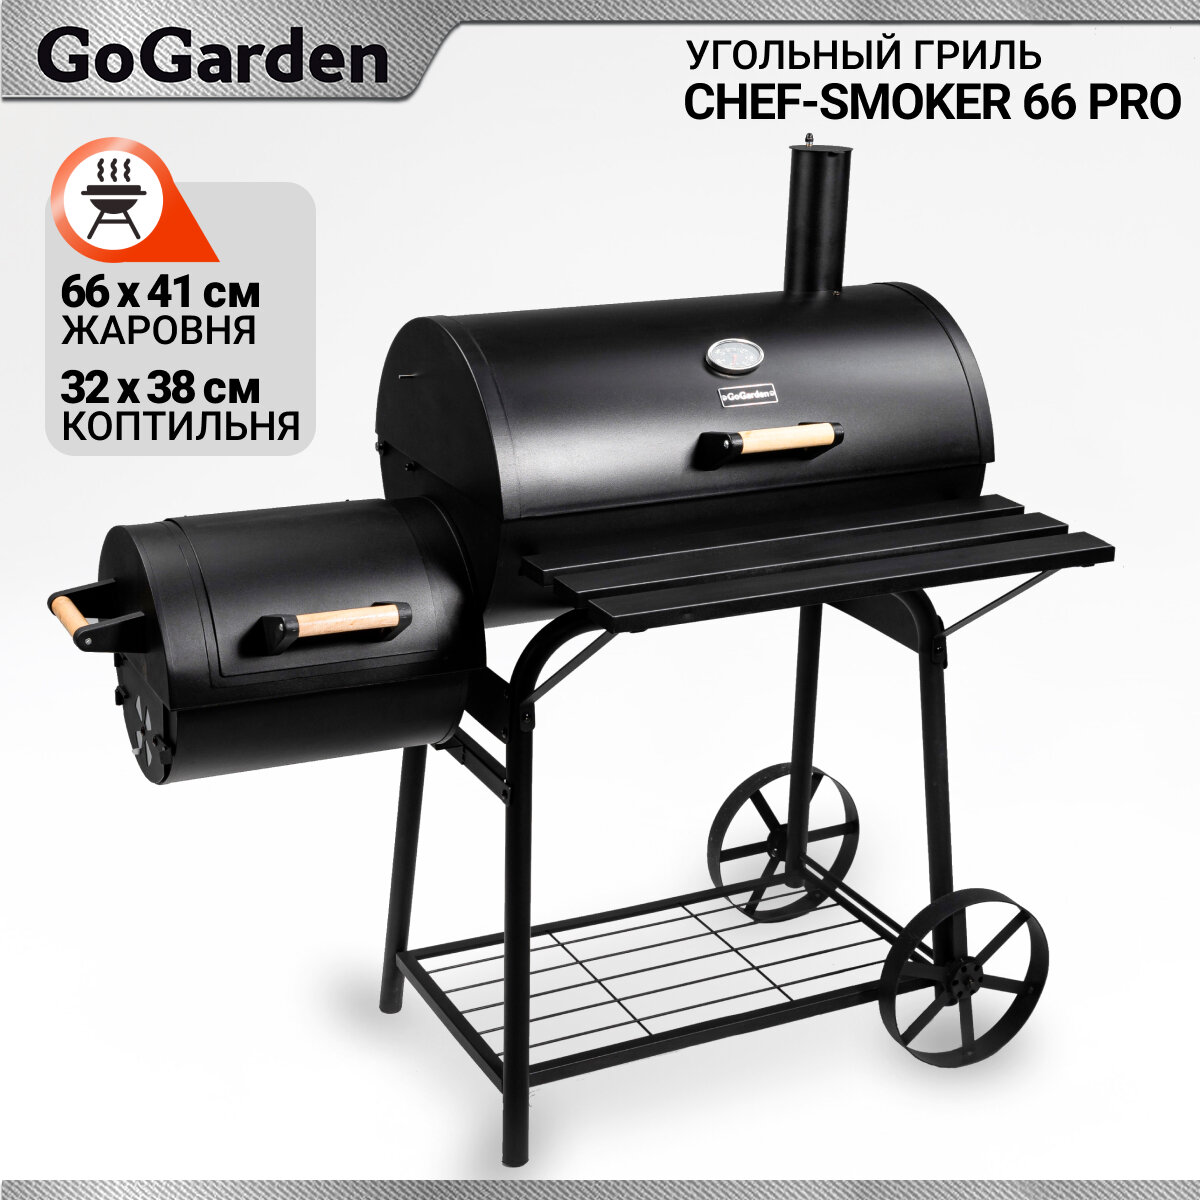 Угольный гриль-бочка с коптильней Go Garden CHEF-Smoker 66 PRO